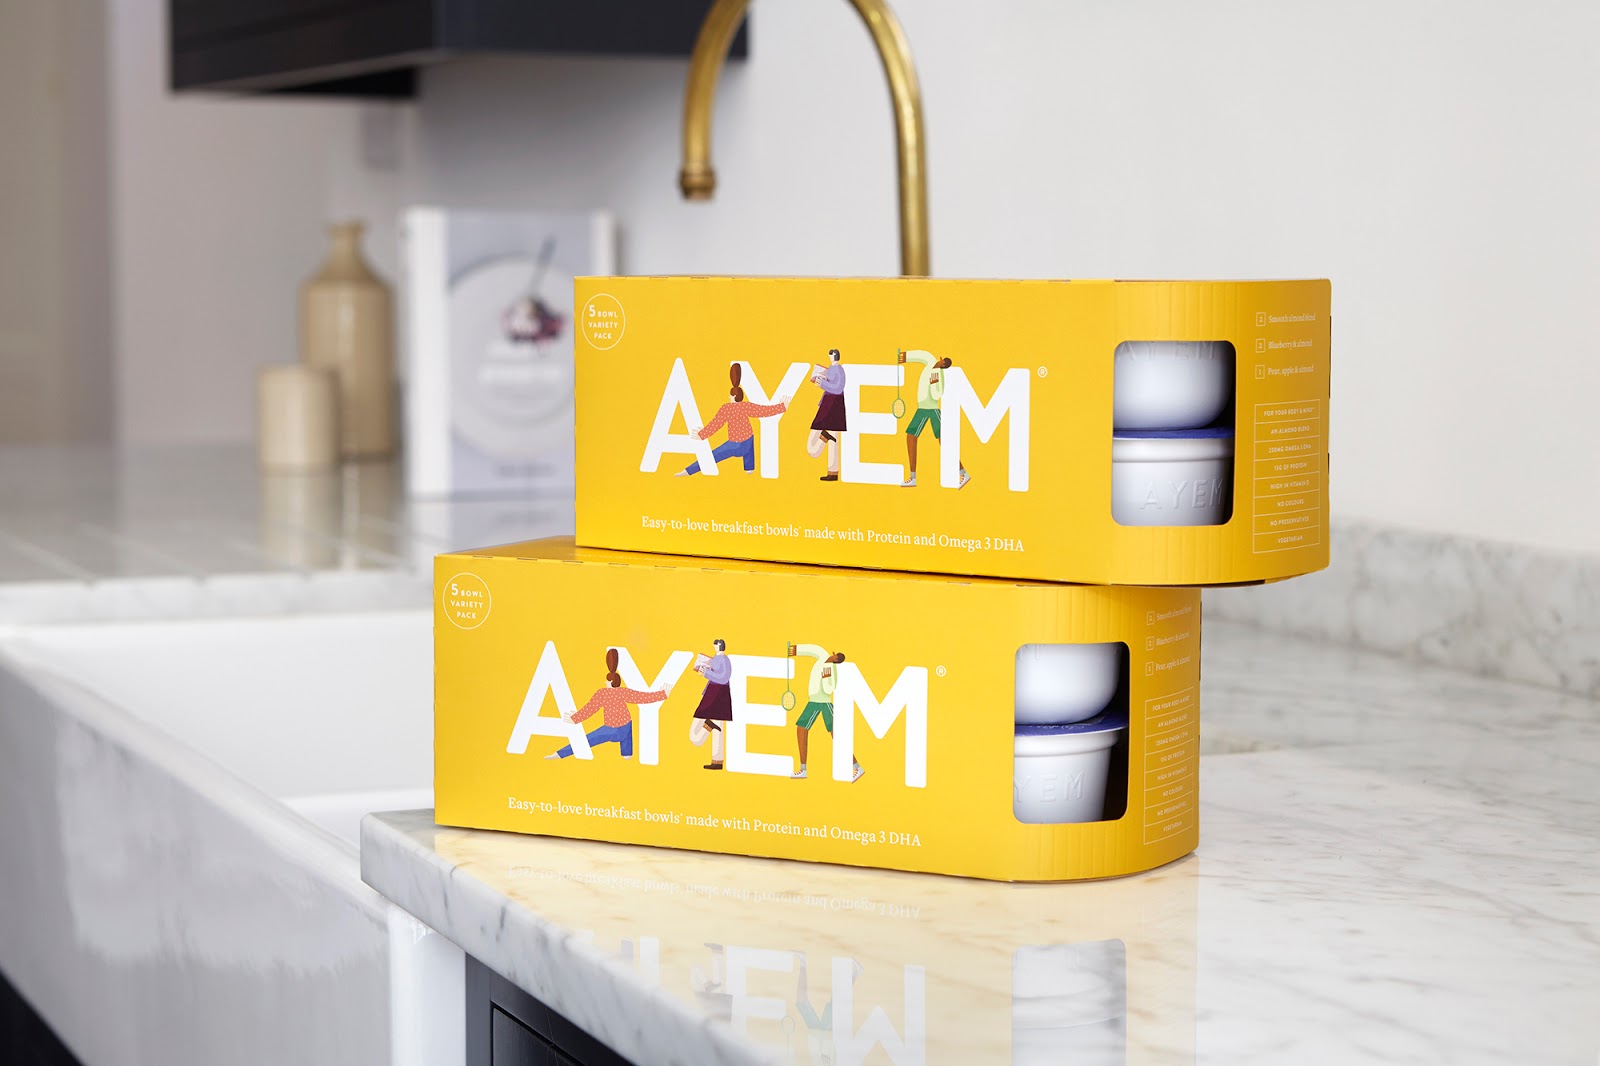 AYEM营养早餐碗包装设计